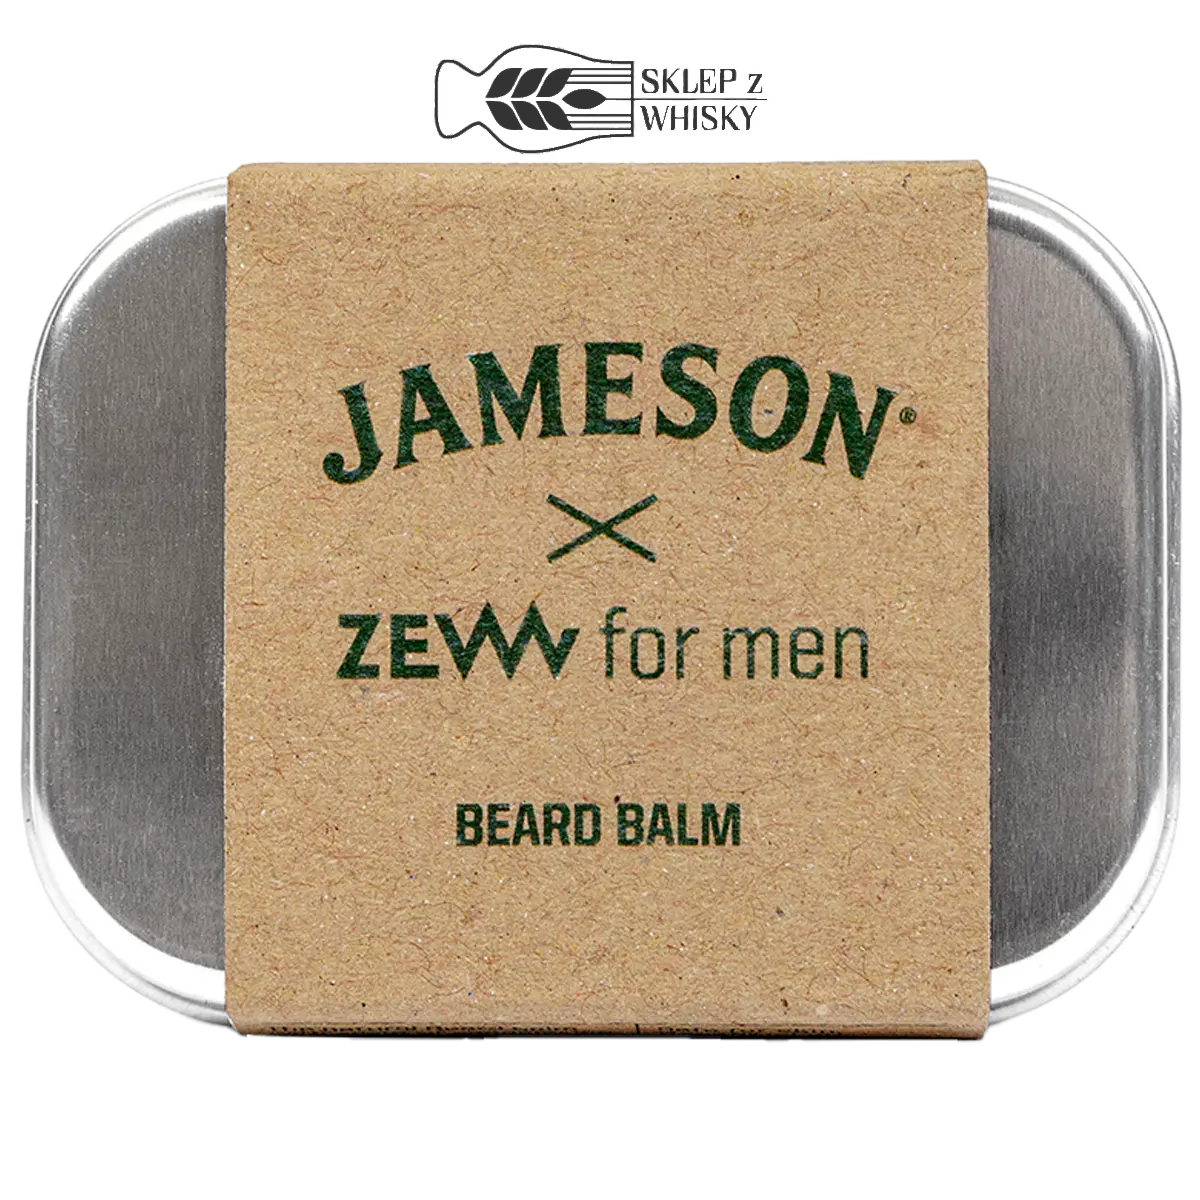 Jameson x Zew for Men - zestaw do brody - balsam